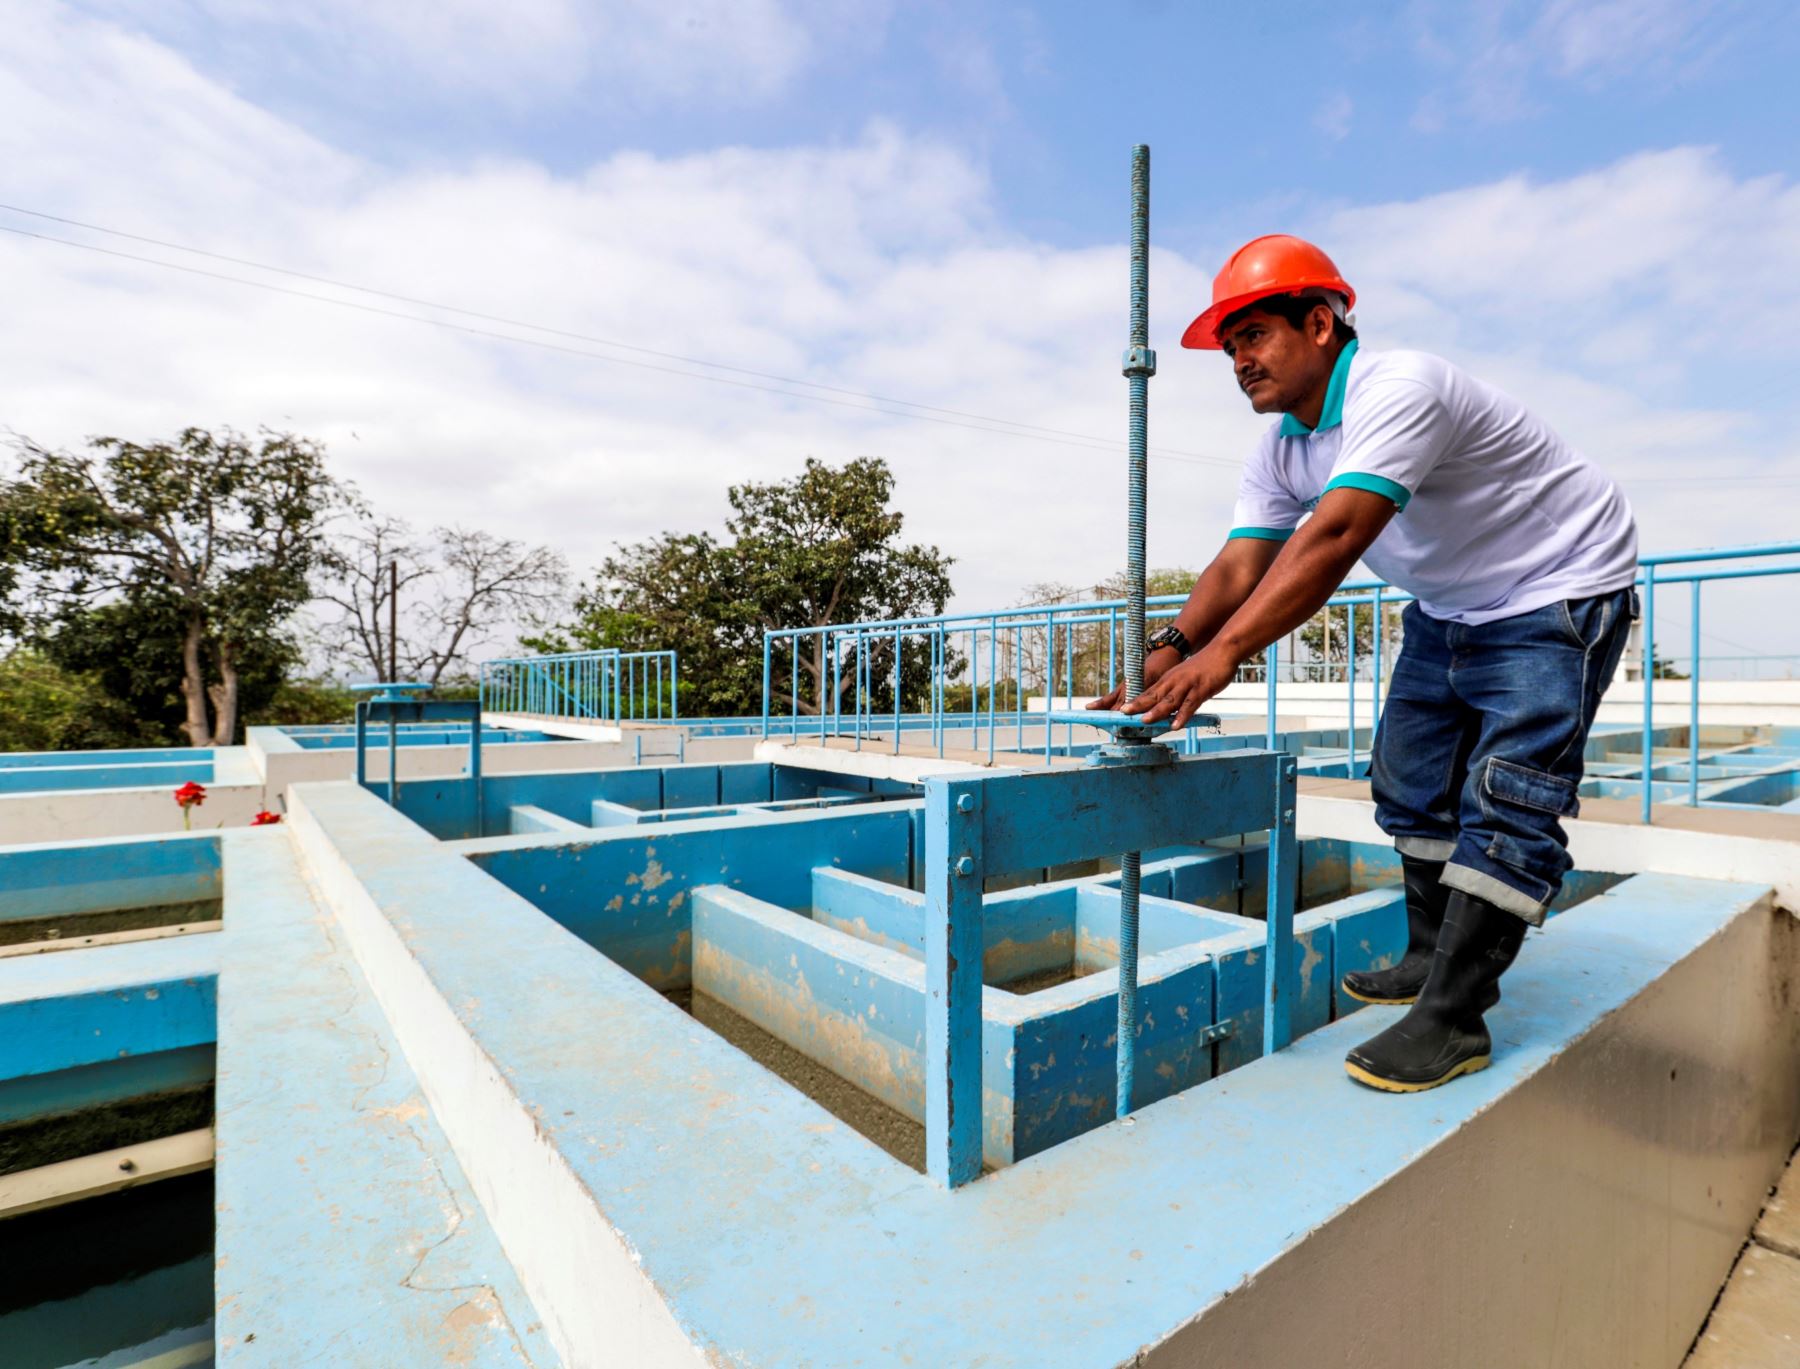 El Ministerio de Vivienda, Construcción y Saneamiento transferirá S/ 2.2 millones para mejorar el servicio de saneamiento en Tumbes, anunció el ministro Carlos Lozada. ANDINA/Difusión